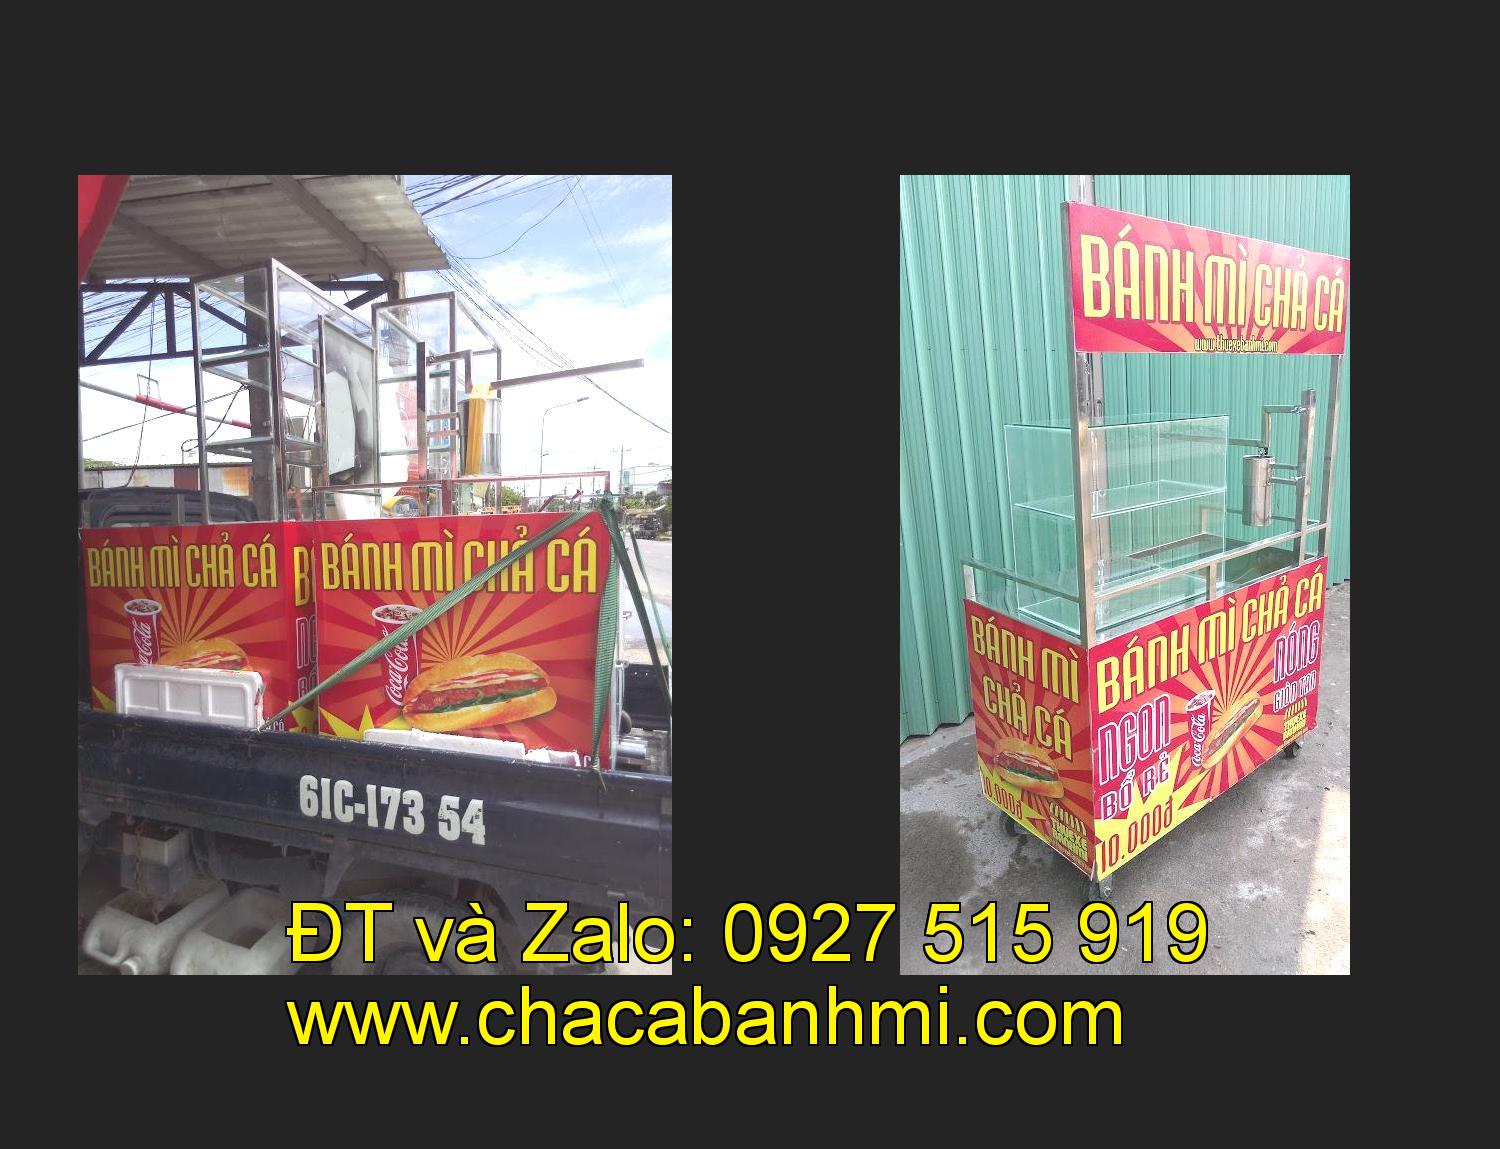 xe bánh mì chả cá inox tại tỉnh Hà Nội